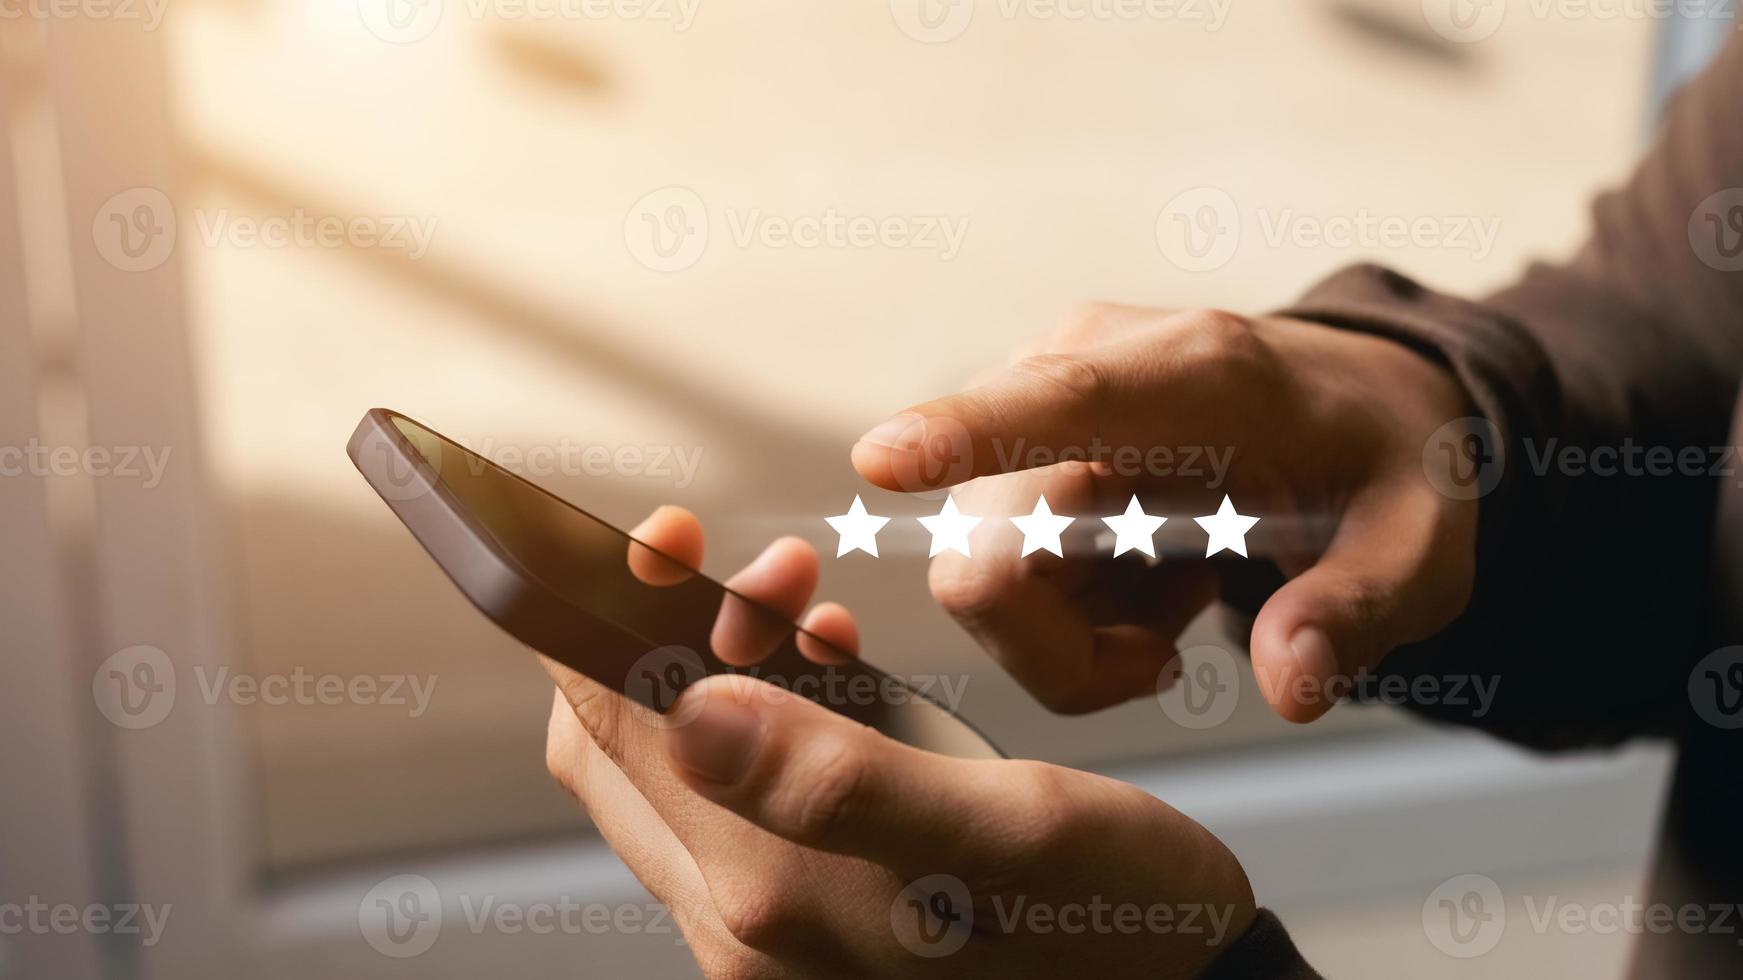 un client masculin donne une note de cinq étoiles sur son smartphone, sa satisfaction, son expérience de service client. revues de notation de service et concept d'enquête de satisfaction. photo